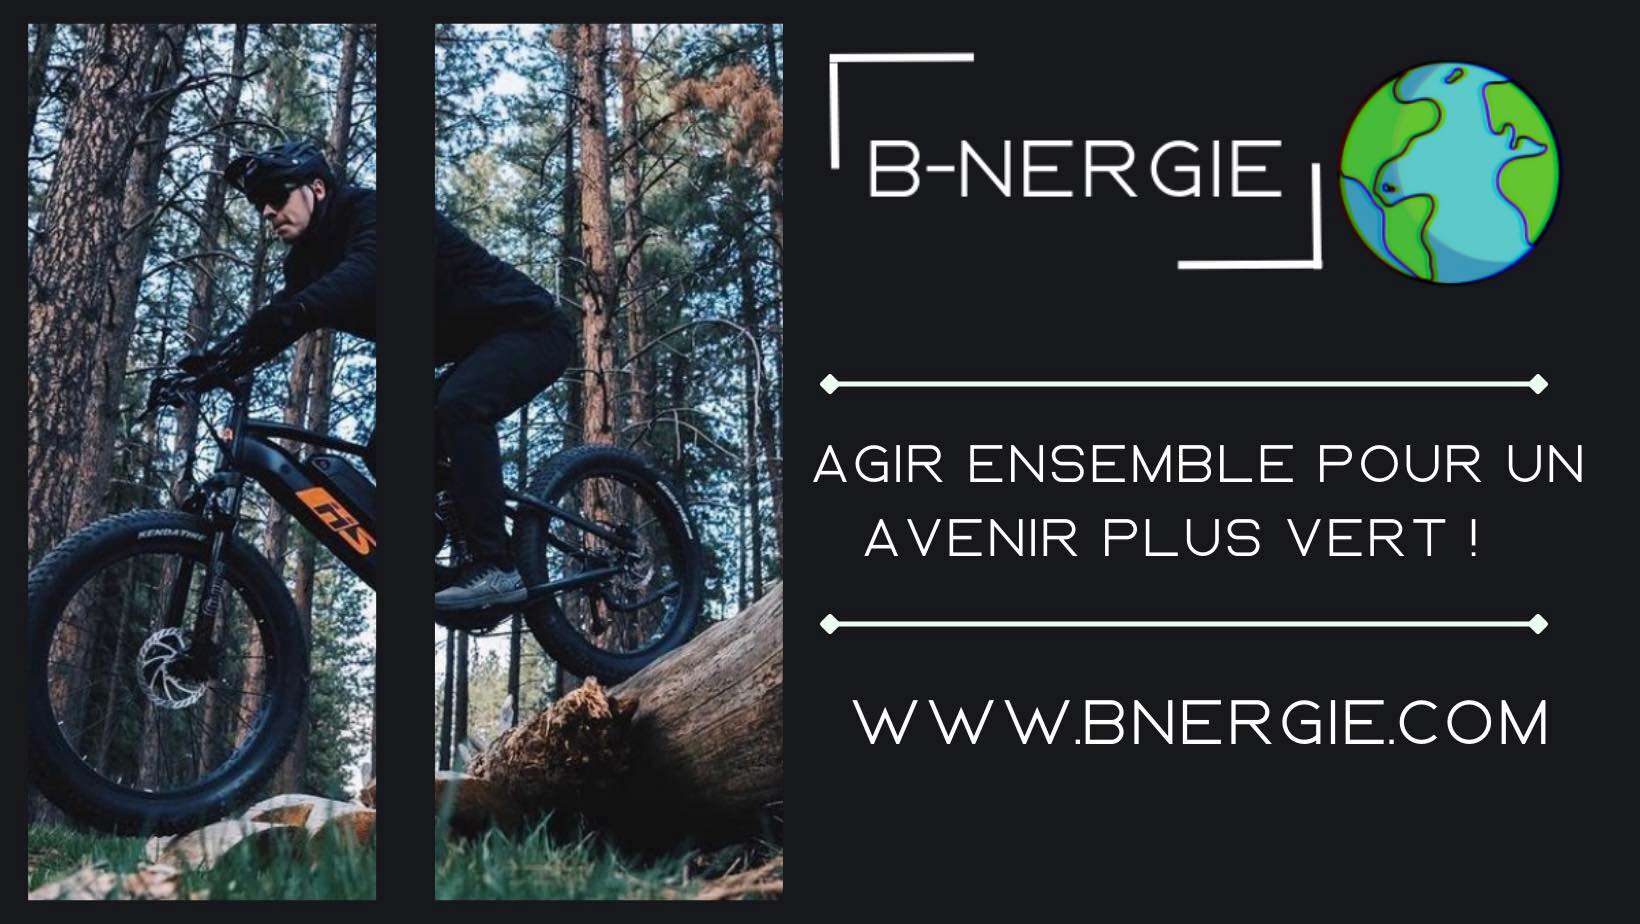 B-nergie - Location de vélo électrique